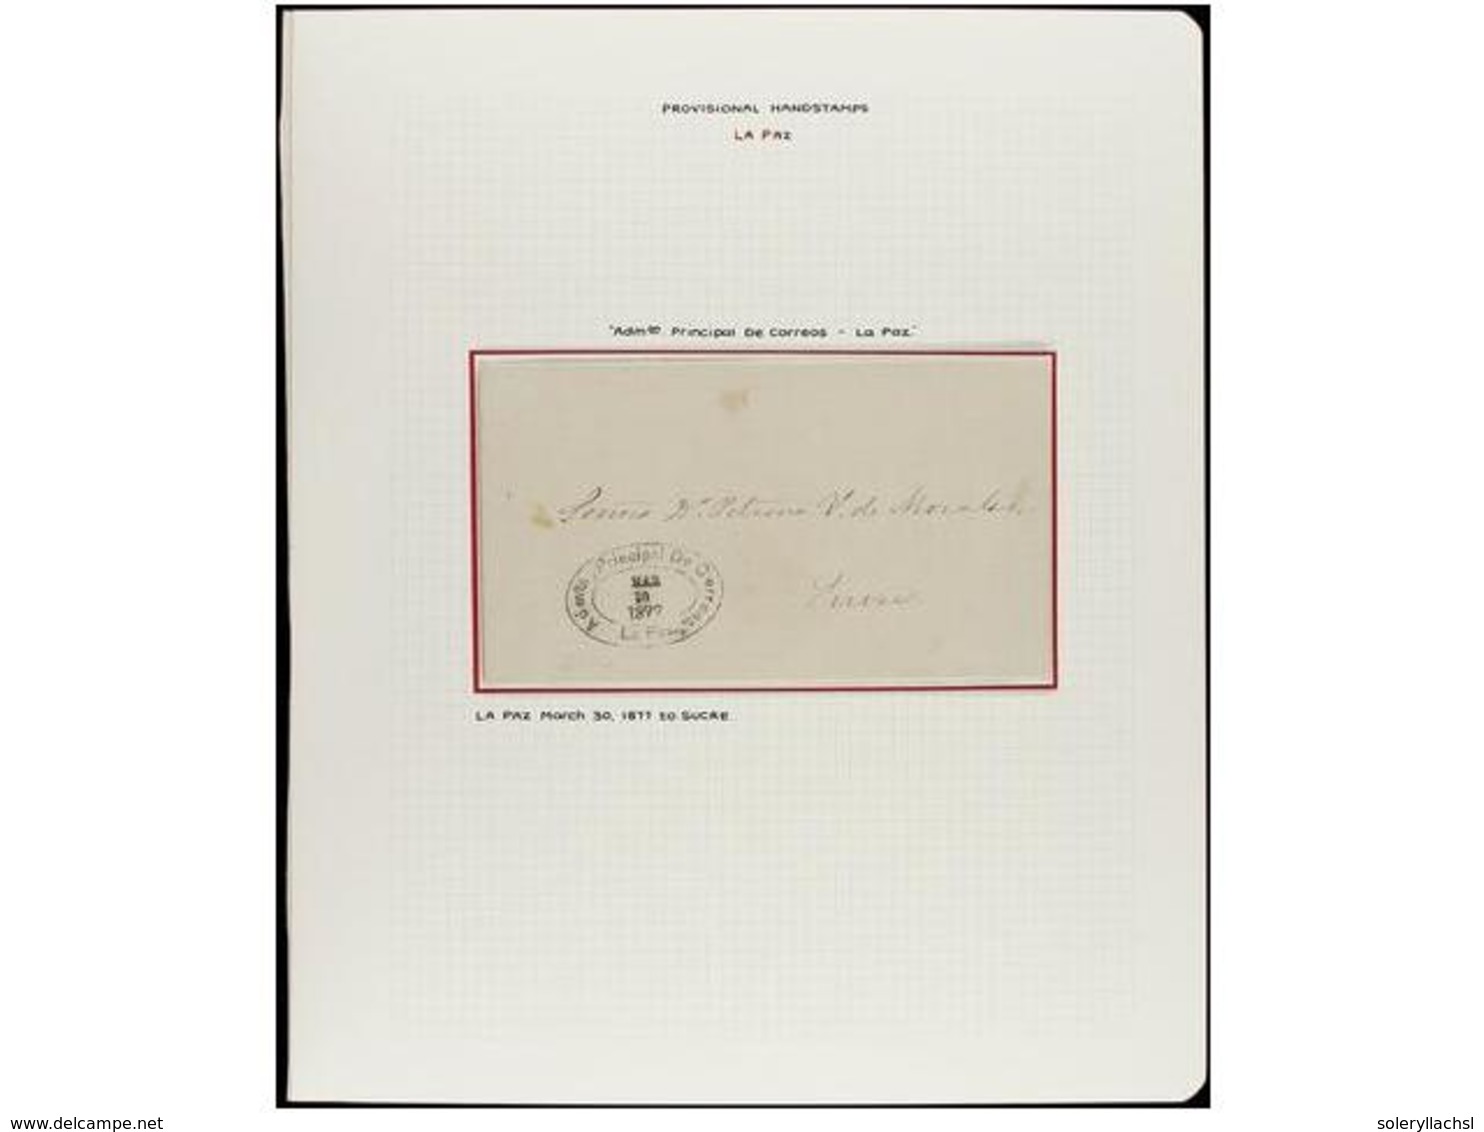 BOLIVIA. 1880-1886. LA PAZ. Conjunto de dieciocho cartas circuladas sin sellos con marcas PROVISIONALES indicando el por